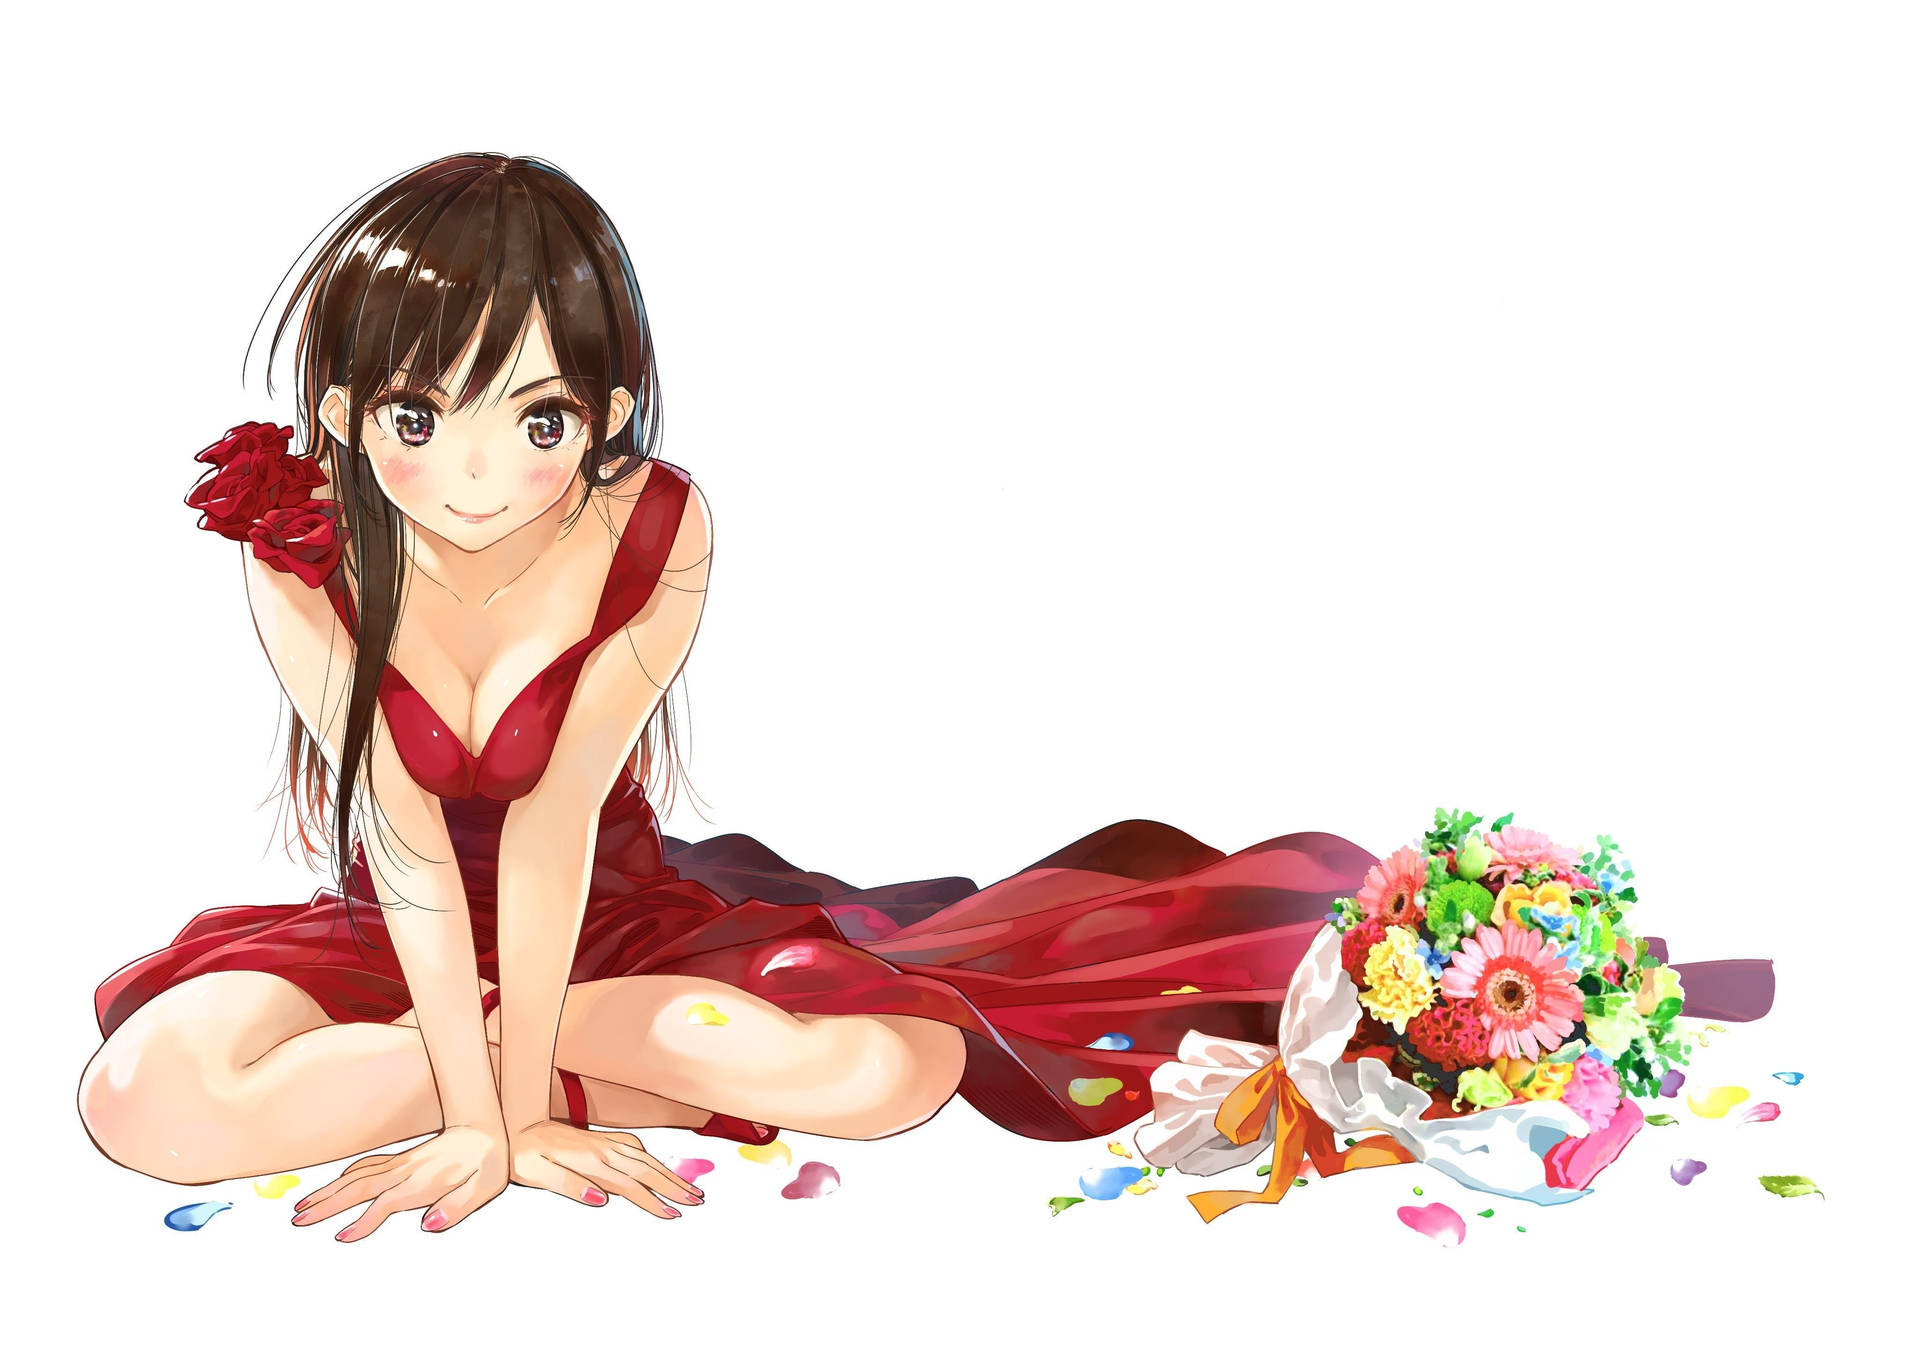 Rent A Girlfriend Chizuru In Red Dress Wallpaper